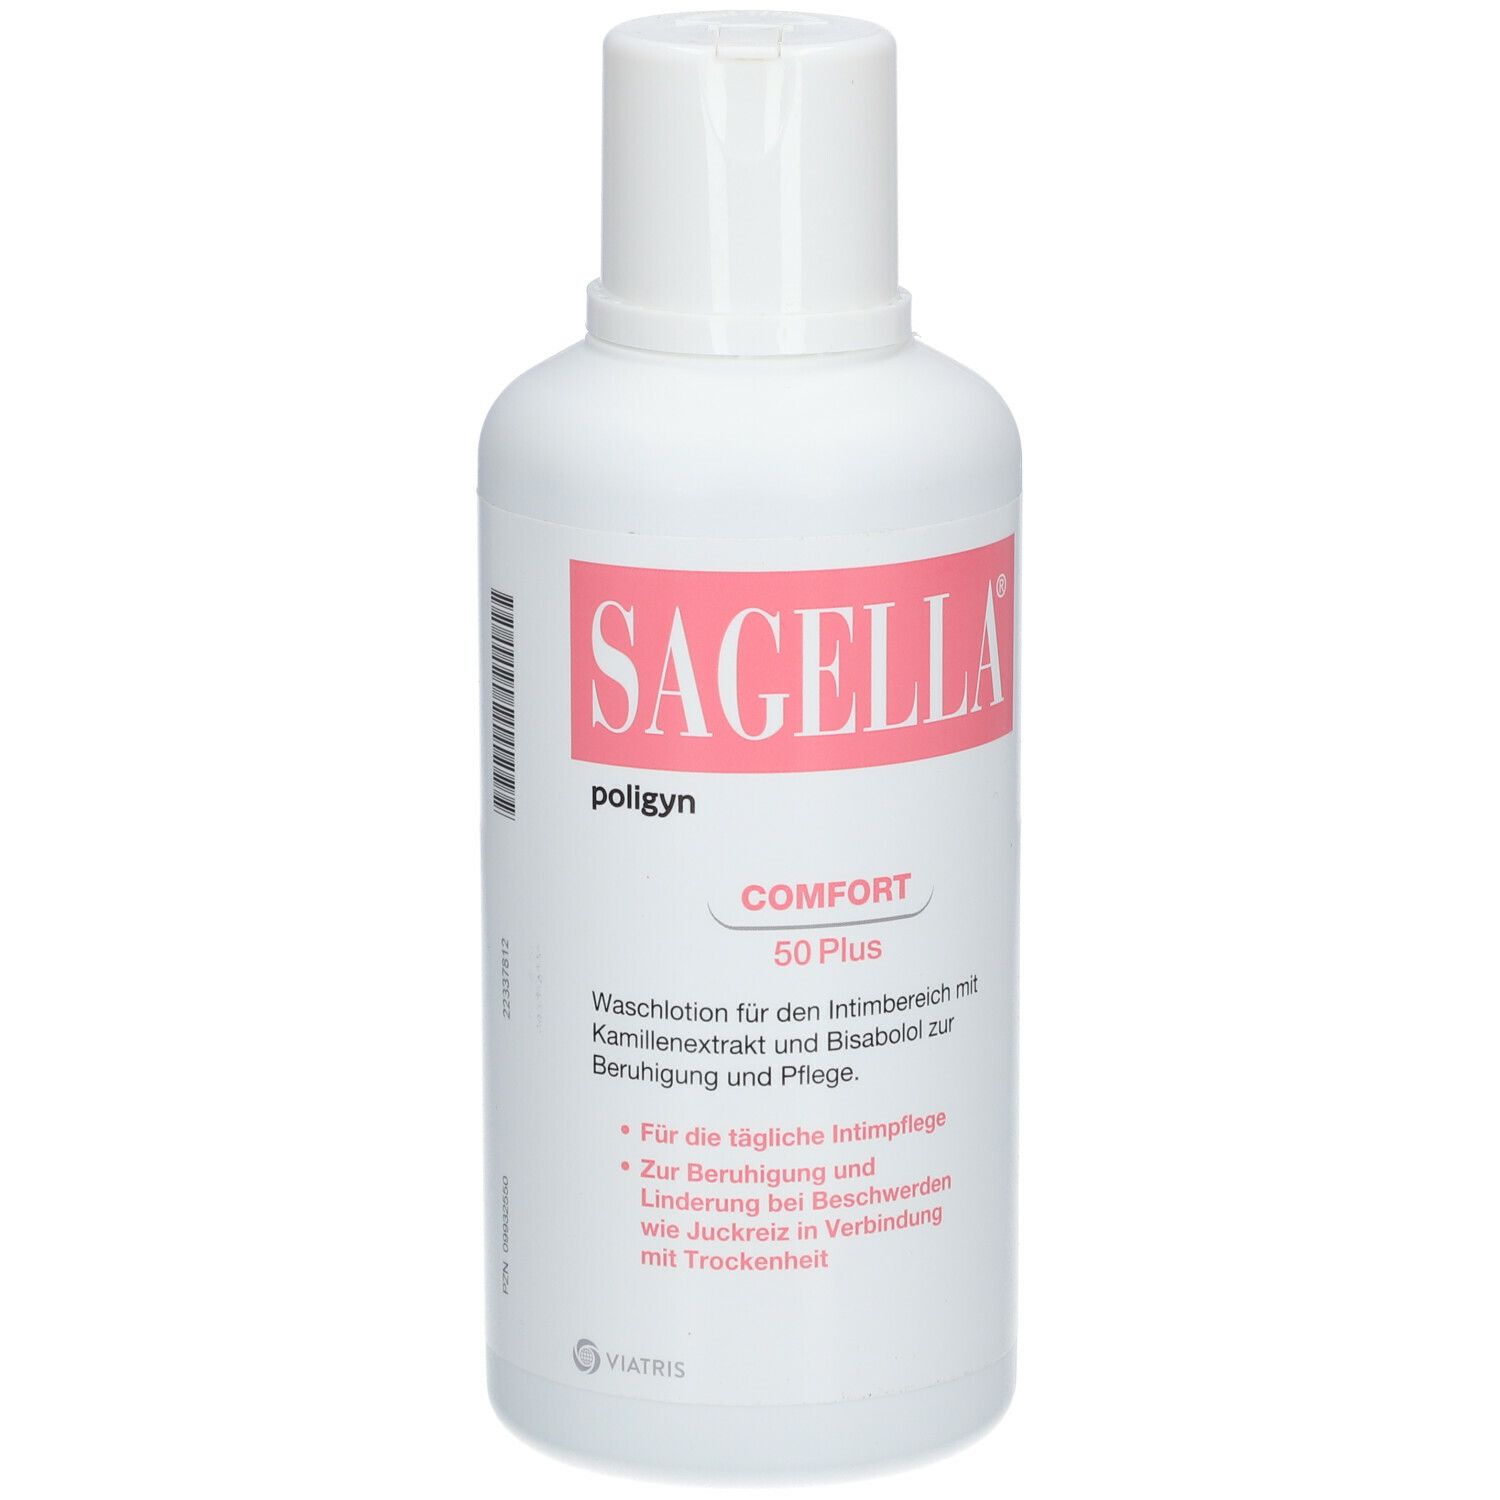 SAGELLA poligyn - Comfort 50 Plus: Intimwaschlotion mit Kamillenextrakt und Bisabolol,